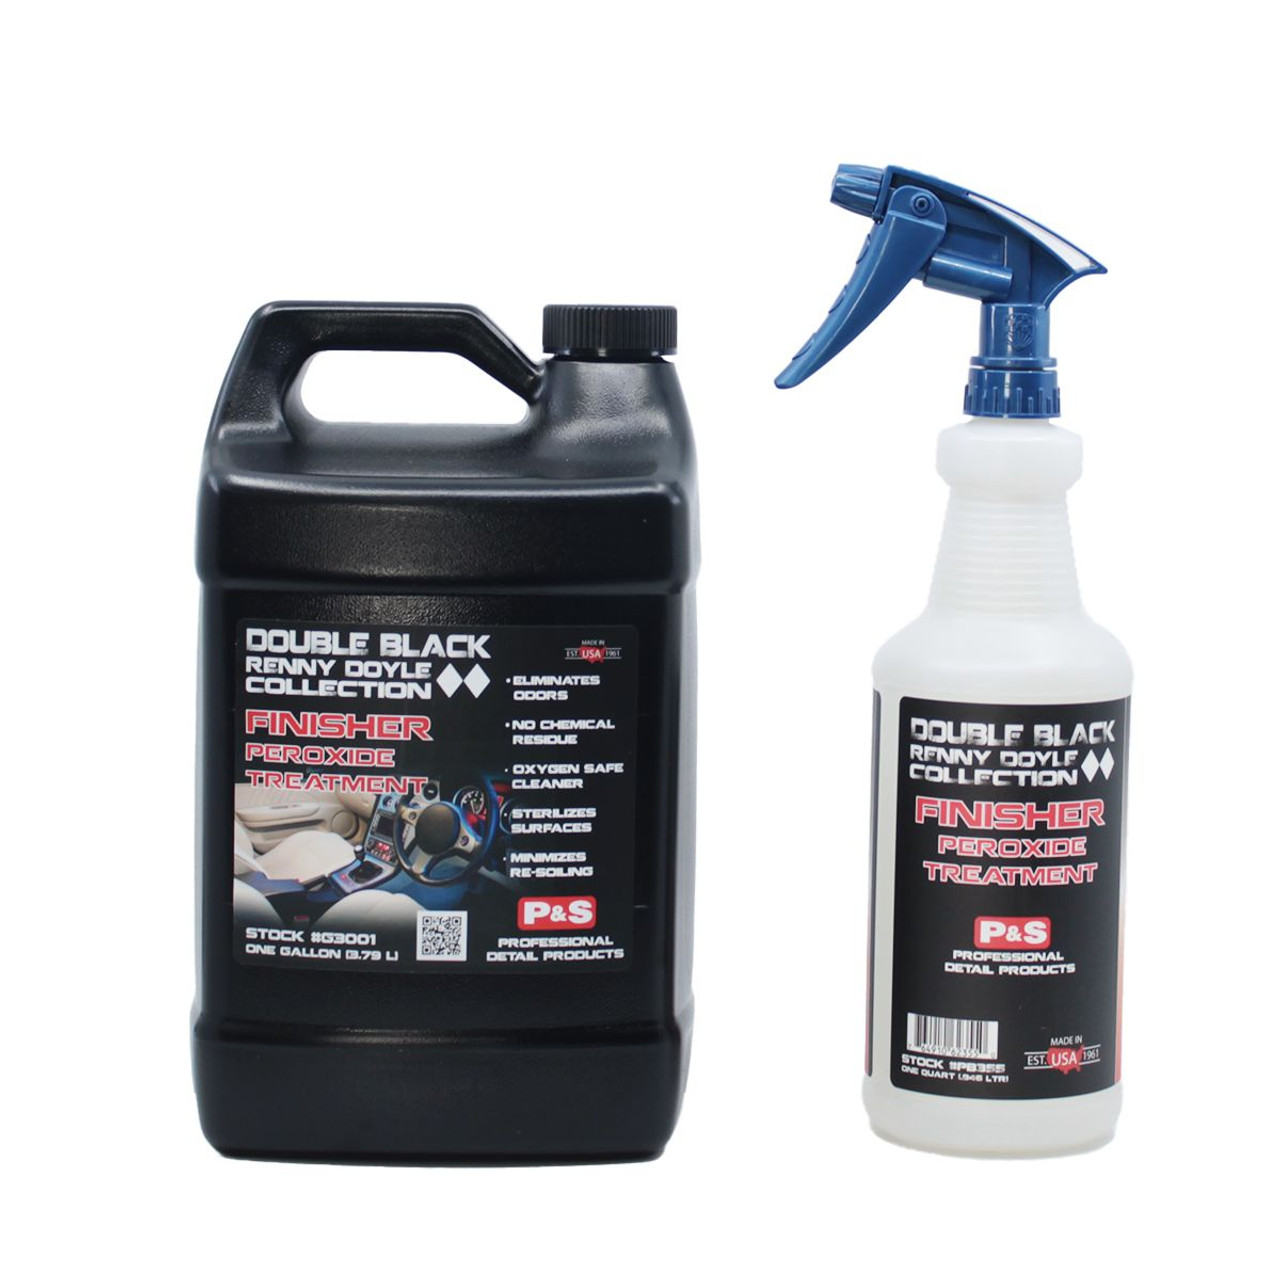 P&S Xpress Interior Cleaner 1 Gallon Kit | 32oz Bottle Sprayer Combo